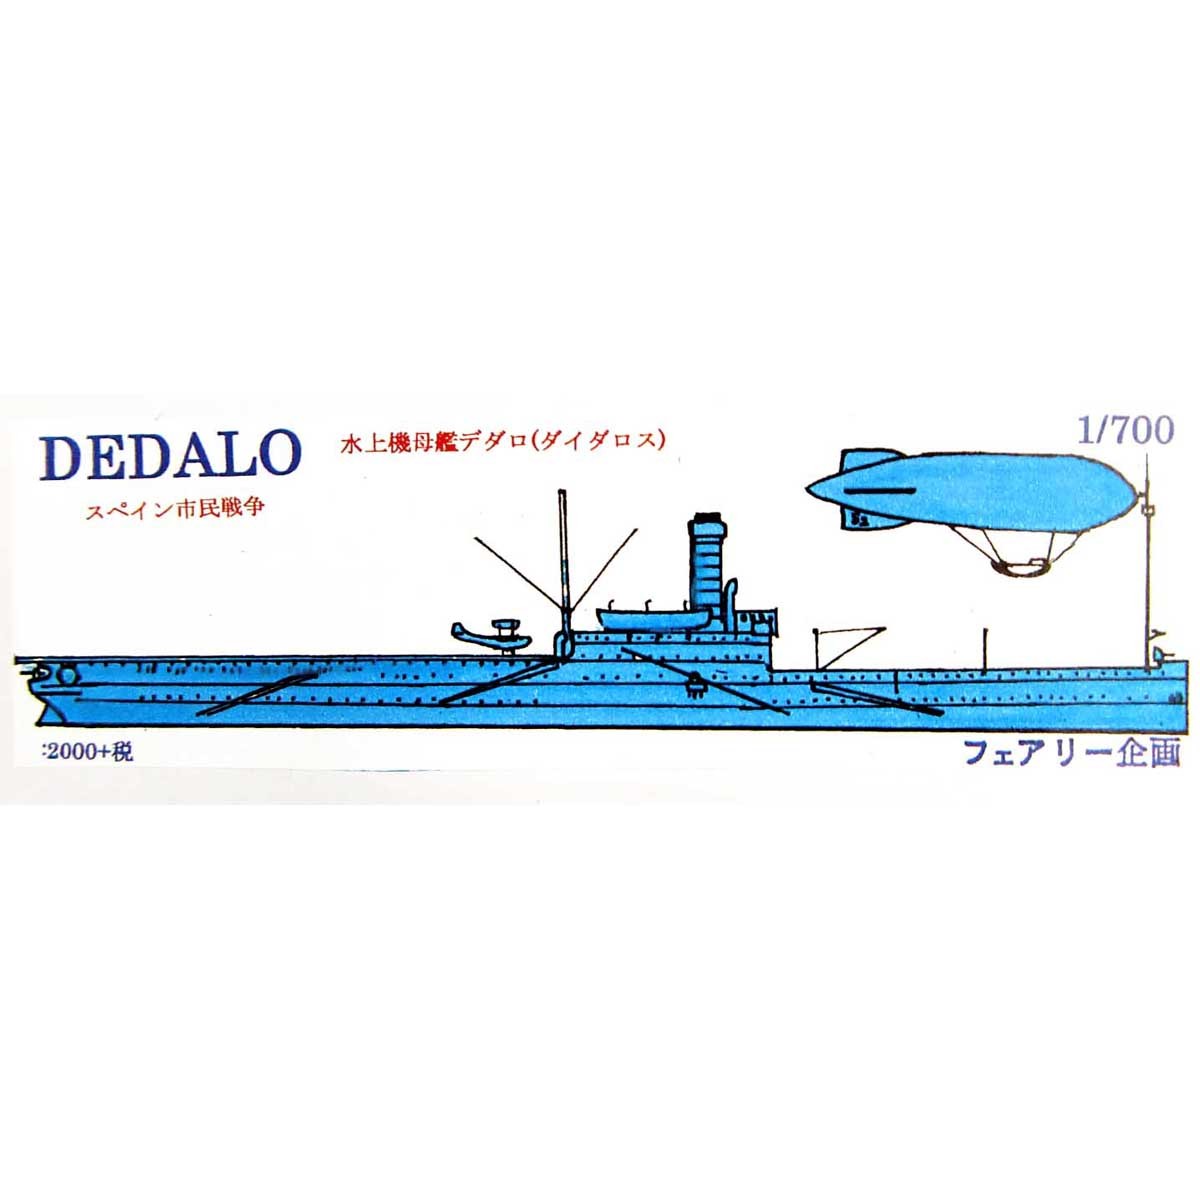 【新製品】138 スペイン海軍 水上機母艦 デダロ(ダイダロス) Dedalo スペイン市民戦争